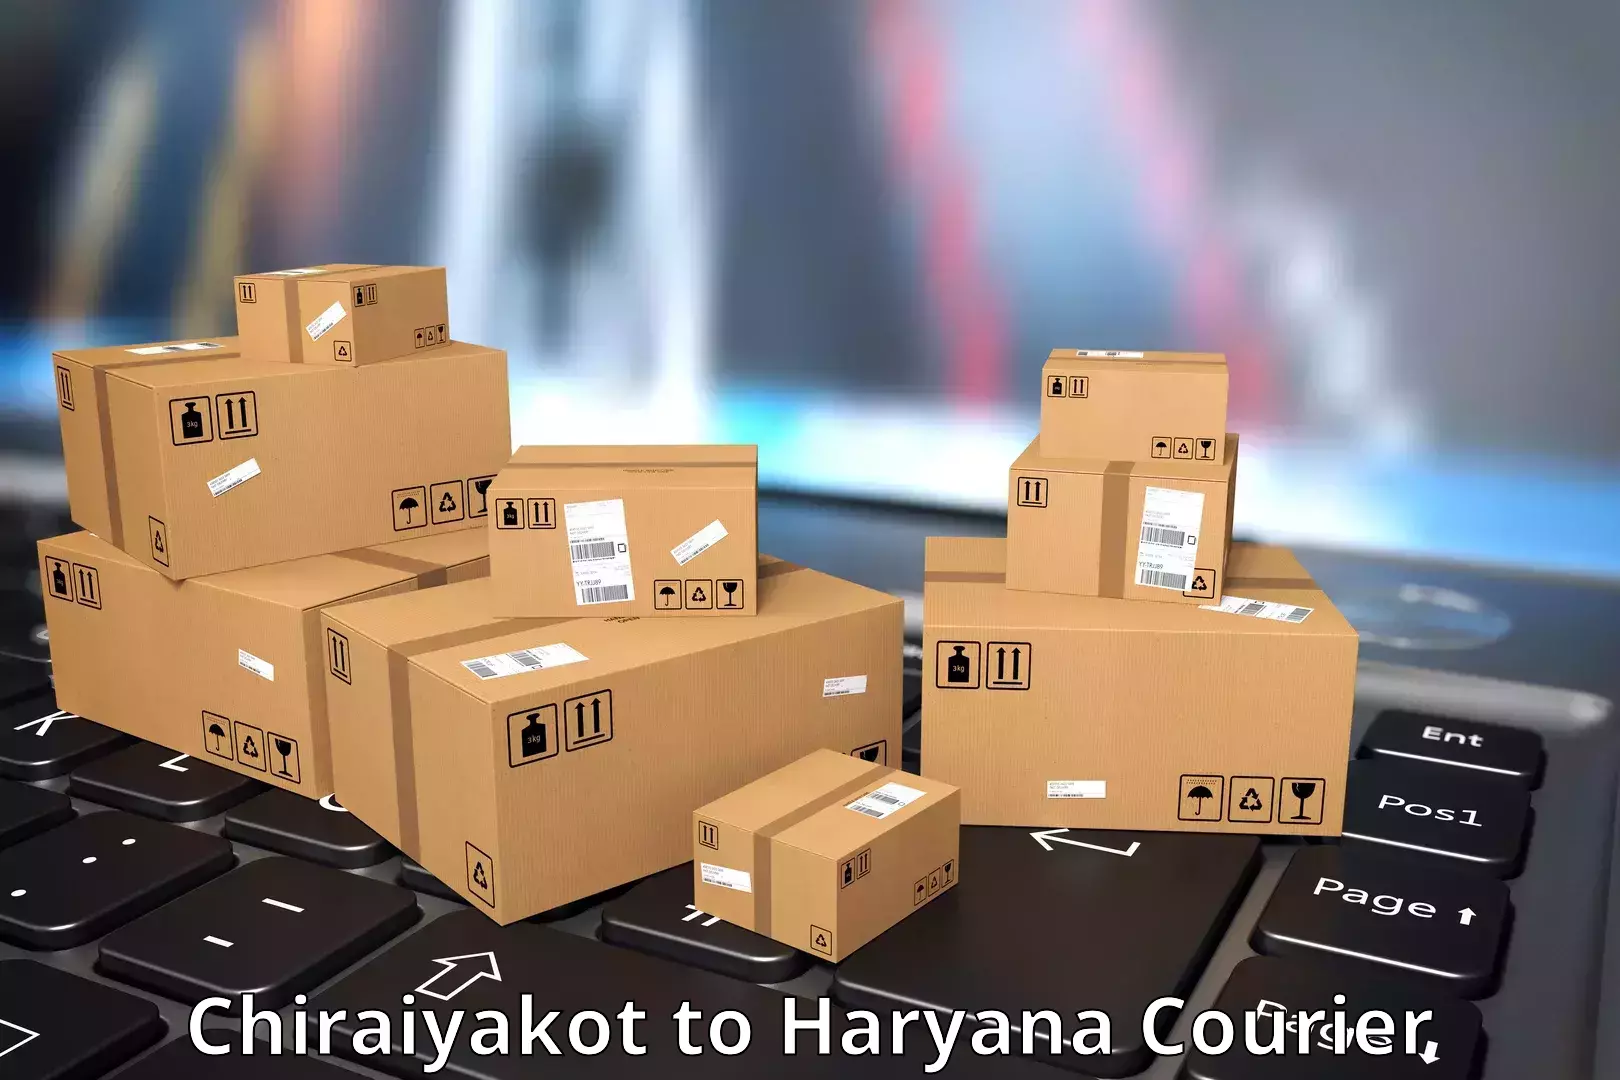 Express courier capabilities Chiraiyakot to Haryana